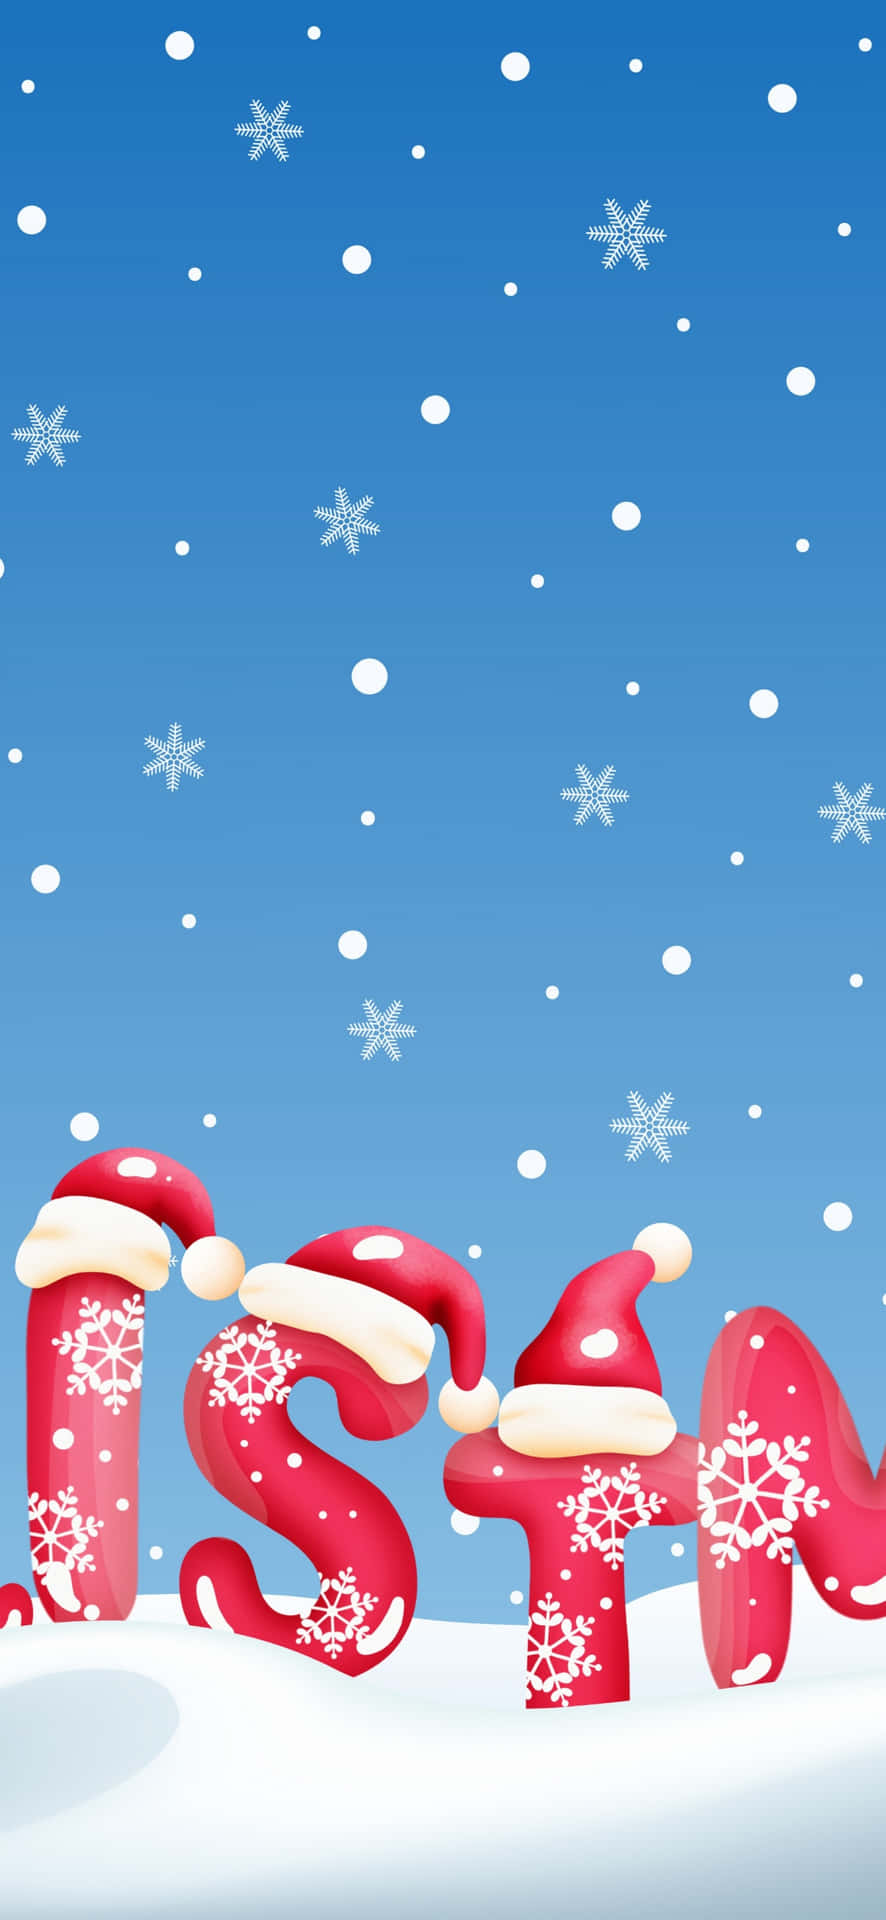 Einweihnachtsbaum Mit Weihnachtsmannhüten Und Schneeflocken.